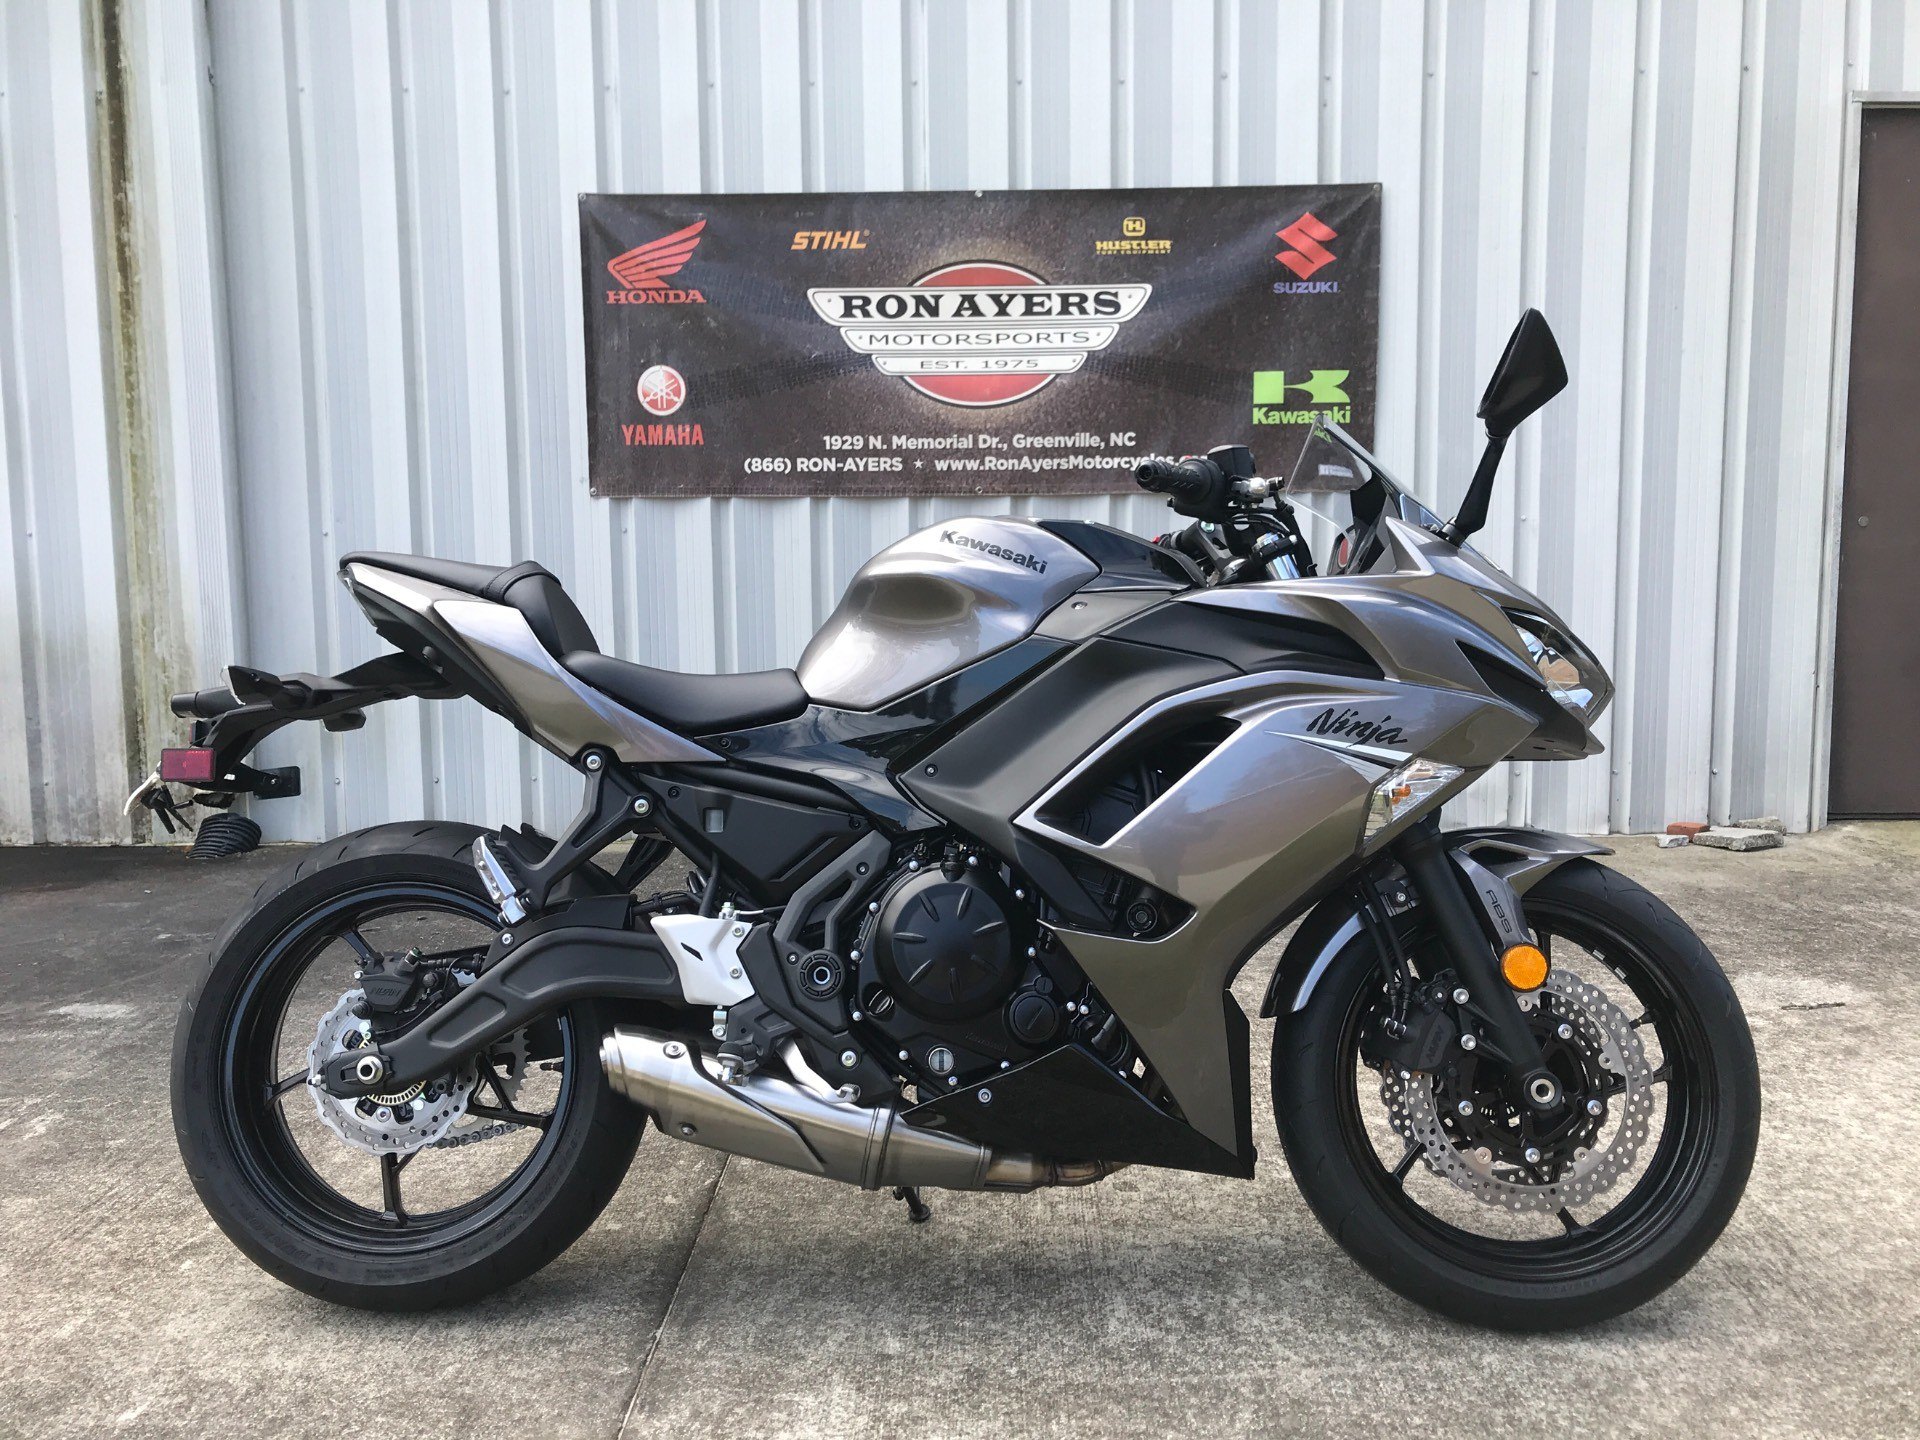 pasta Snart Kanin New 2021 Kawasaki Ninja 650 ABS Motorcycles in Greenville, NC | Stock  Number: N/A